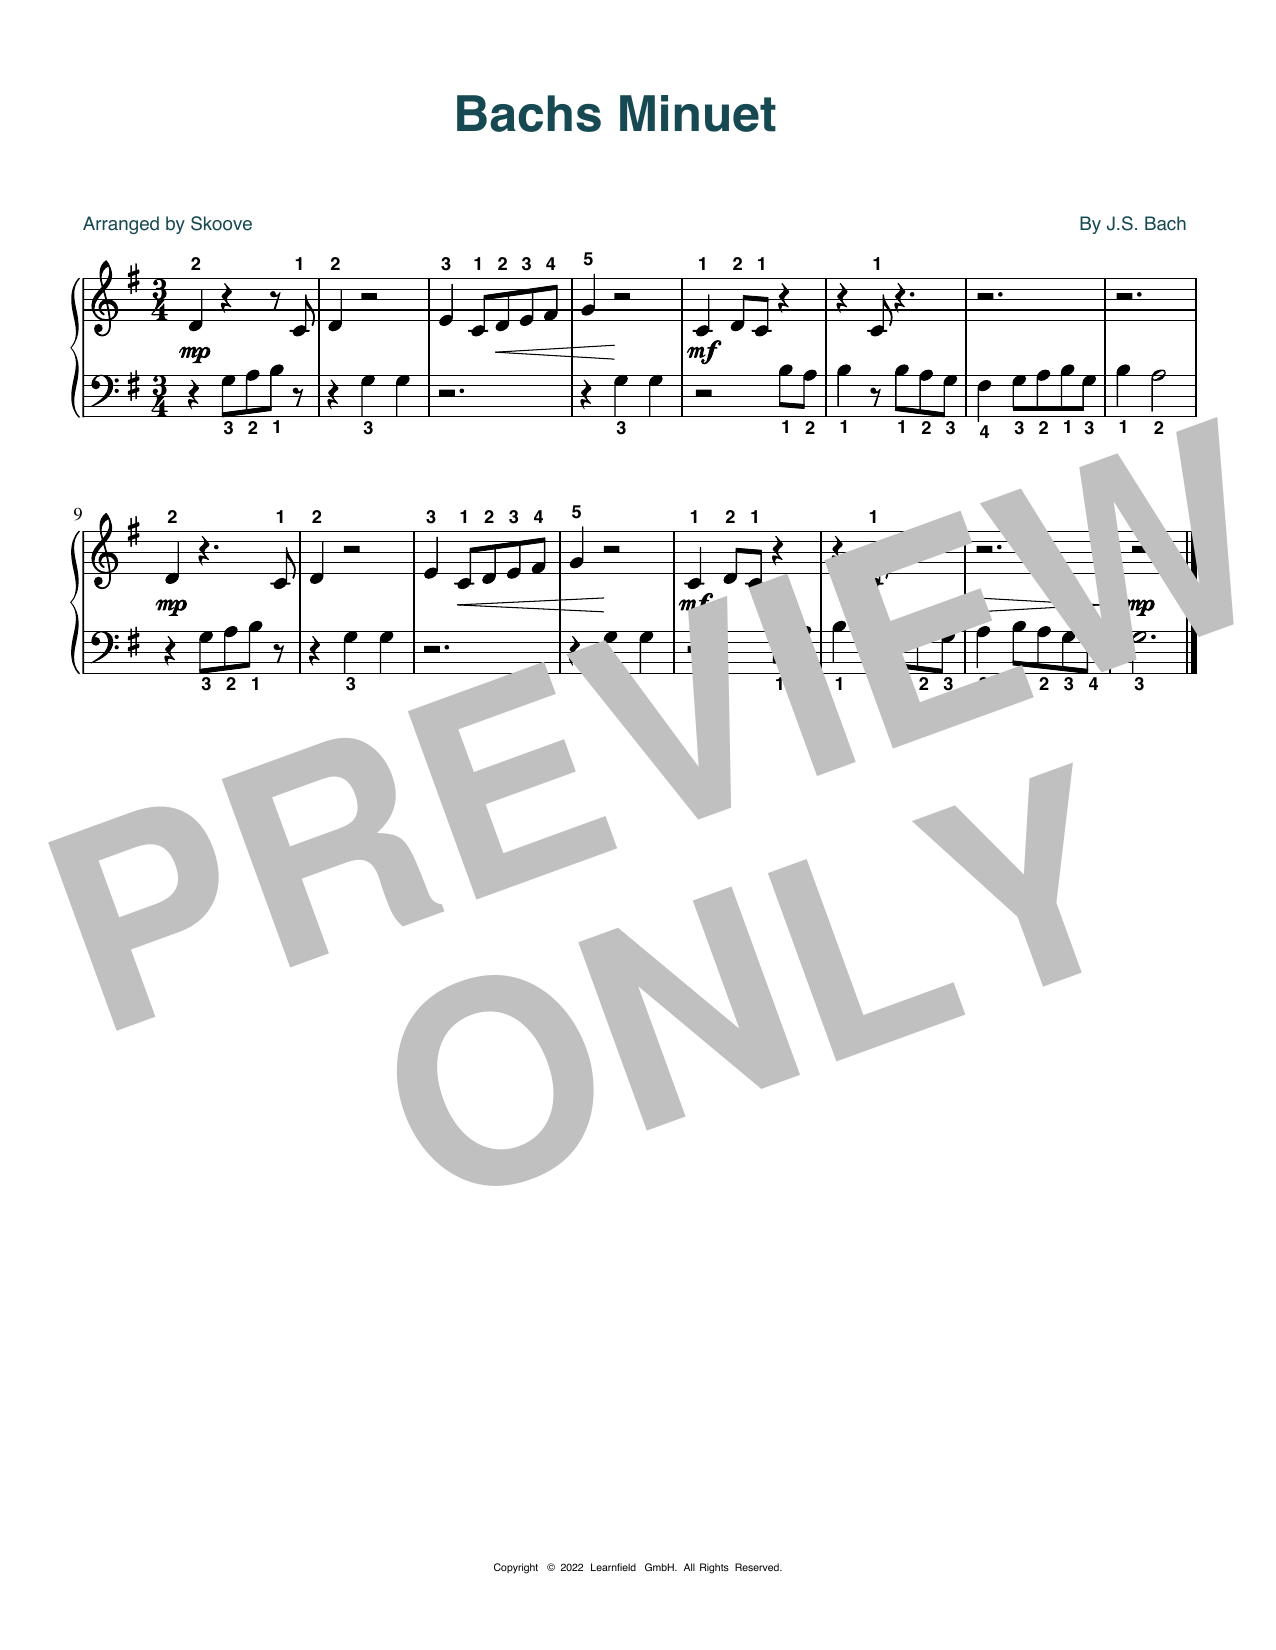 Download J.S. Bach Bach's Minuet (arr. Skoove) Sheet Music